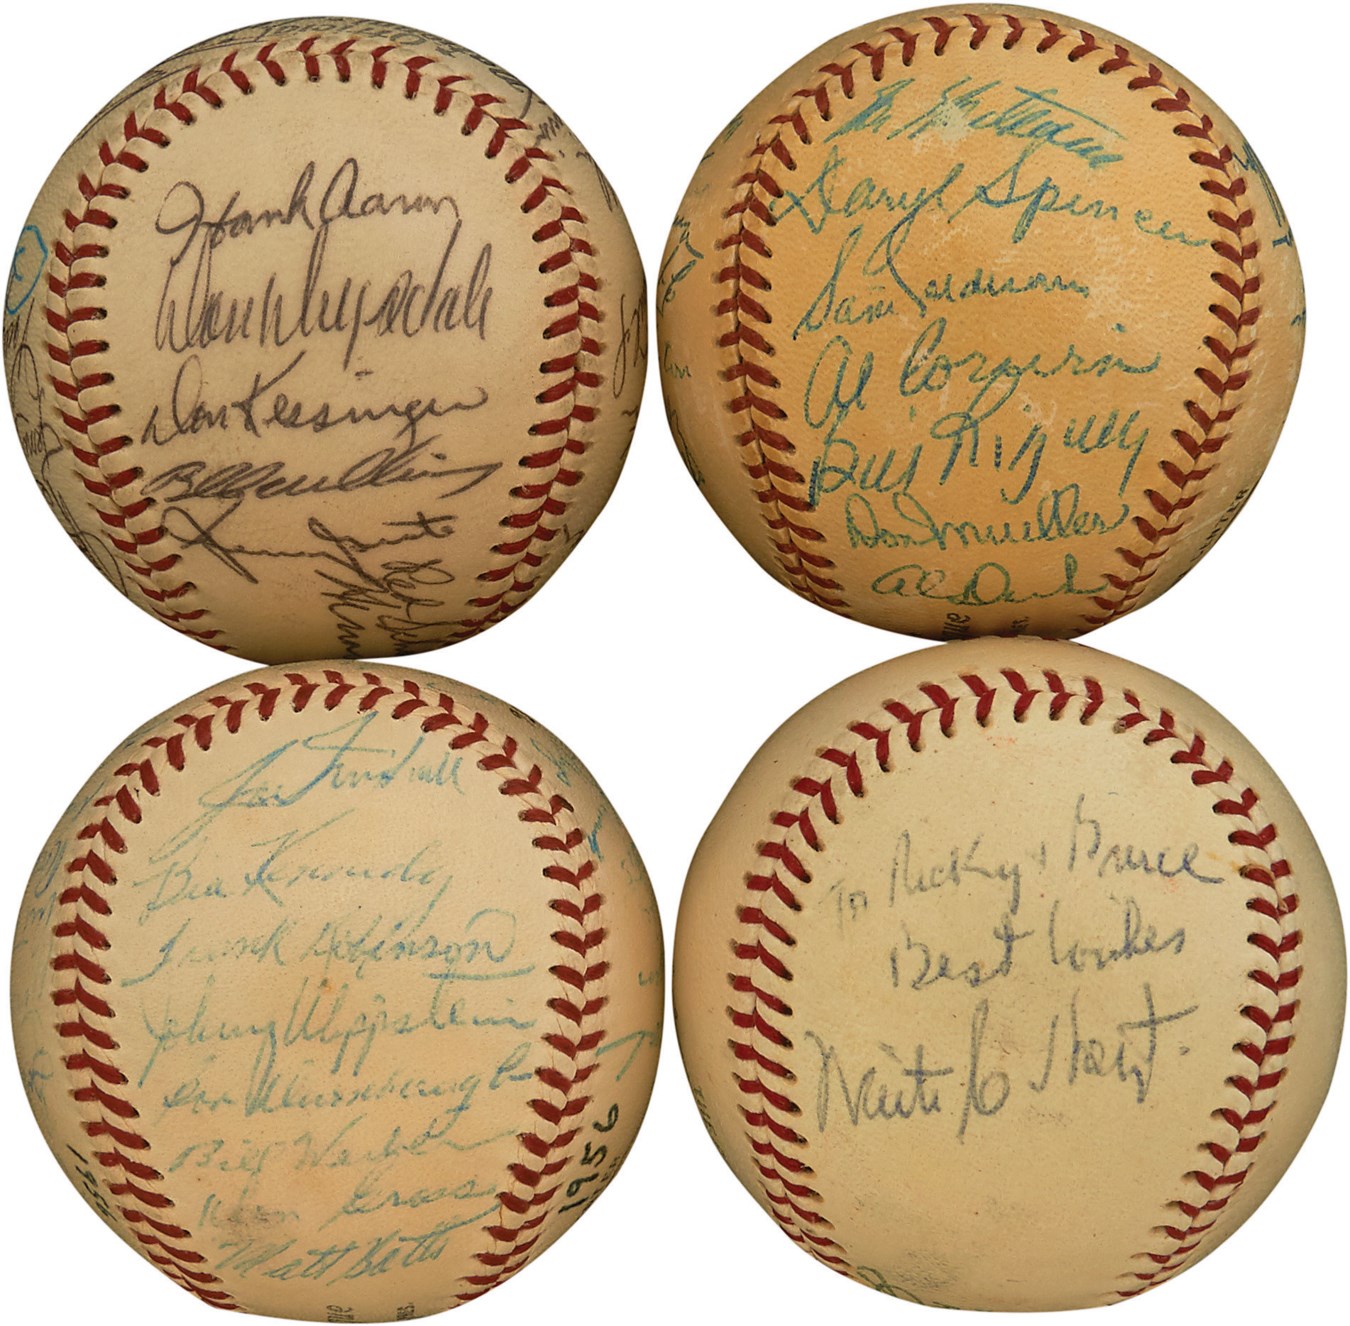 Baseball Autographs - Quartet of Great Vintage Signed Baseballs (4)